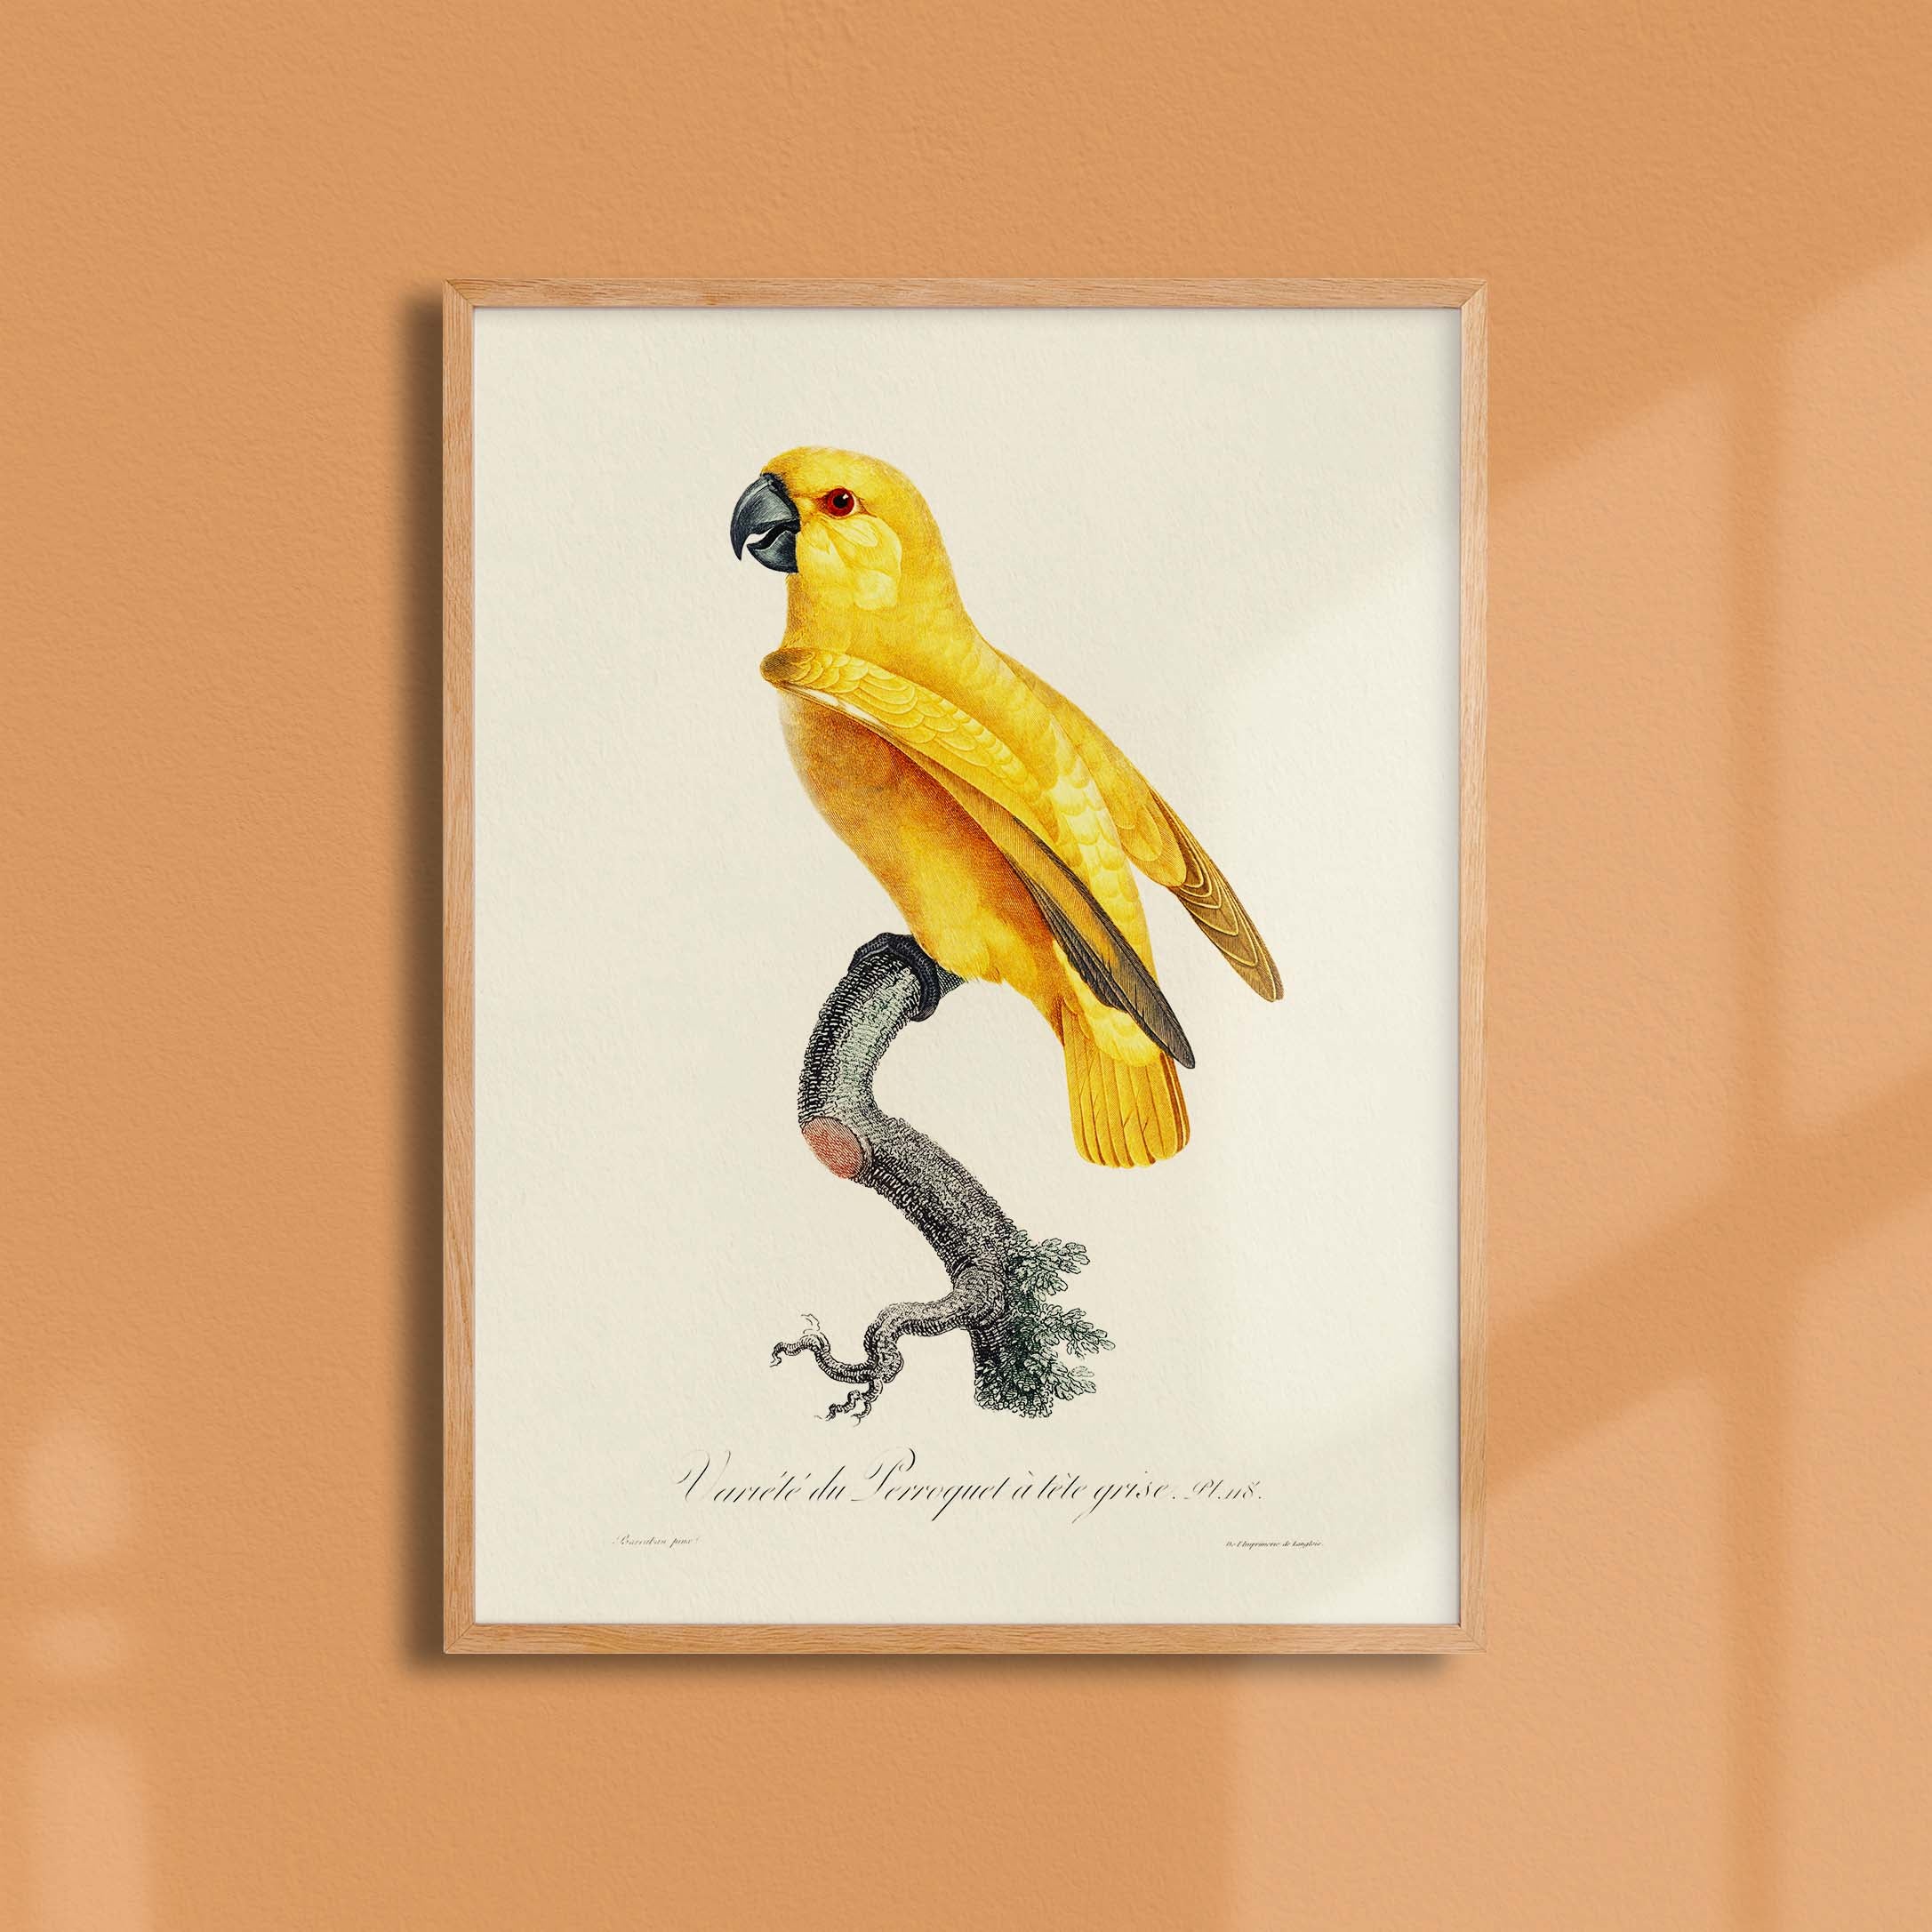 Planche d'ornithologie - Le perroquet à tête grise-oneart.fr